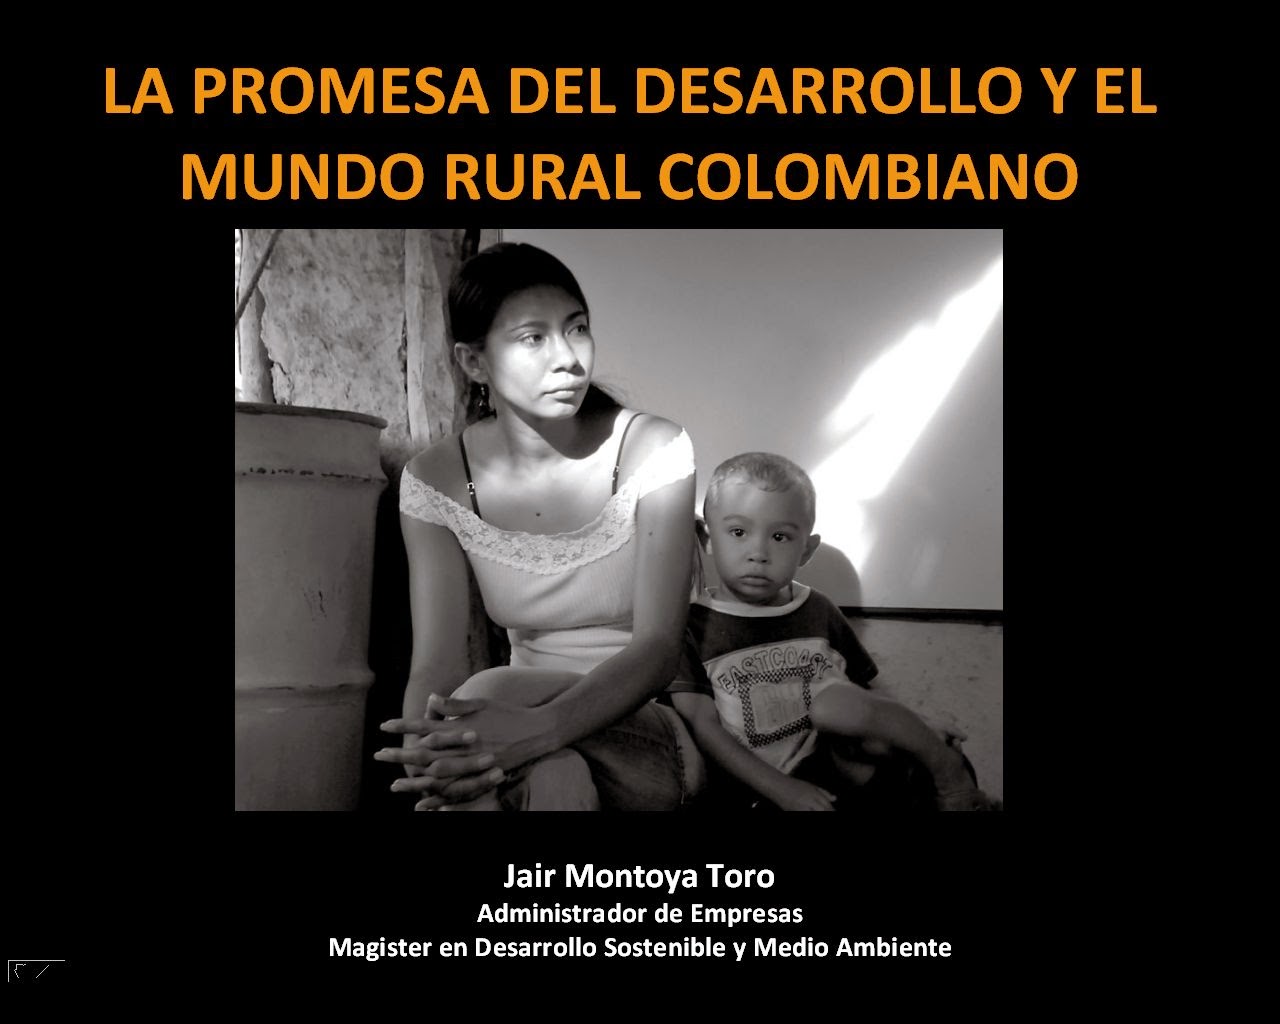 Ir al seminario: La promesa del desarrollo y el mundo rural colombiano